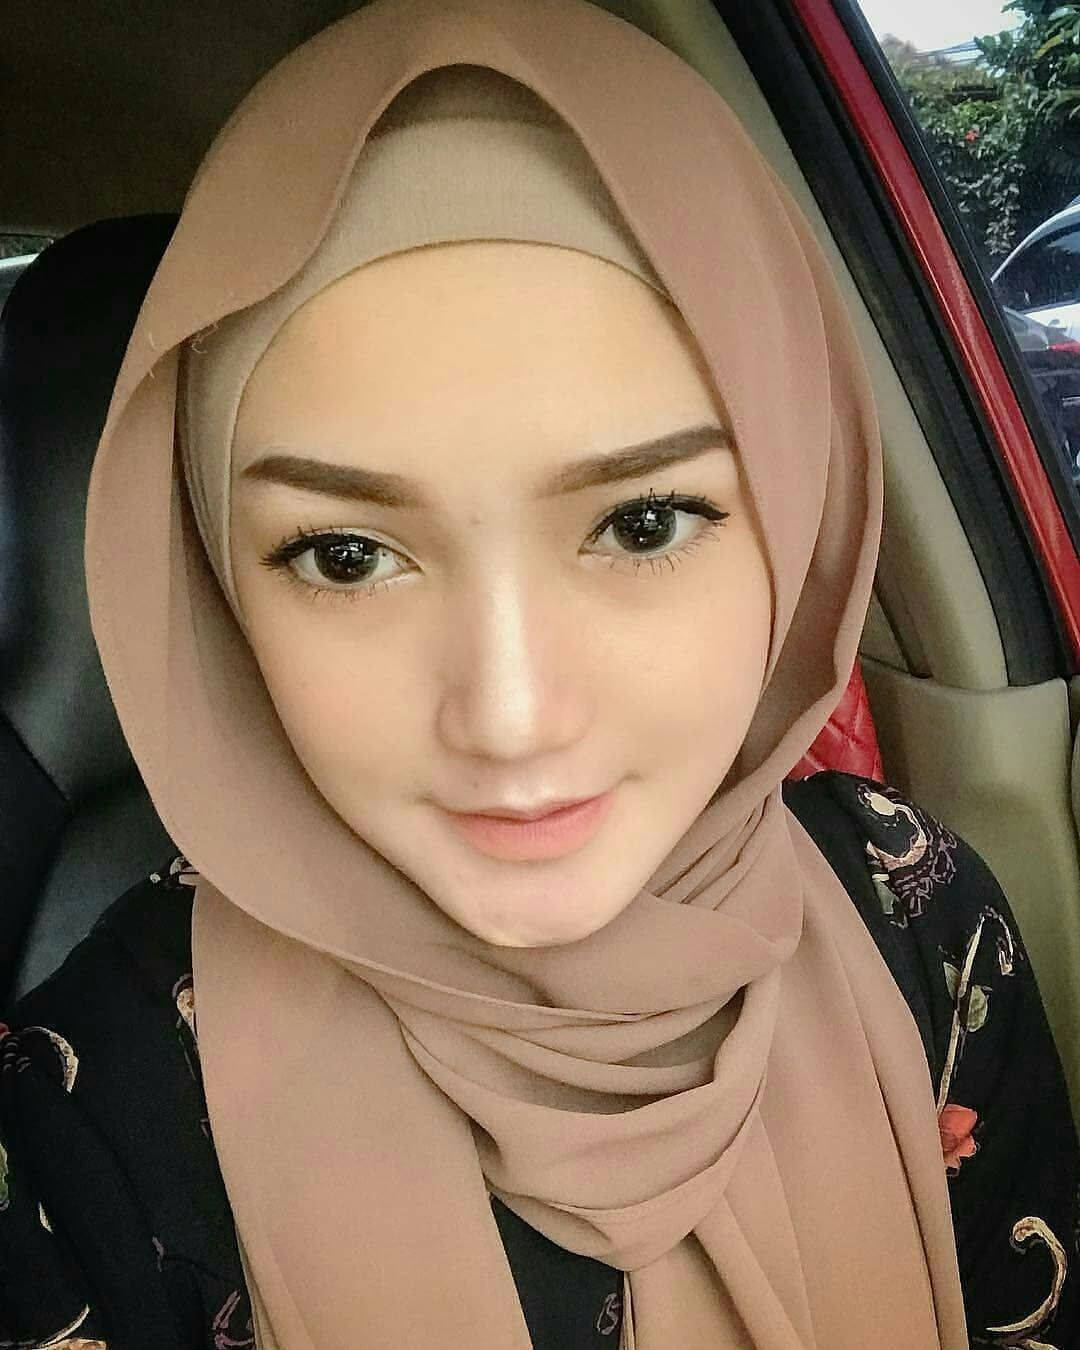 Hijab Girl Car Selfie Wallpaper